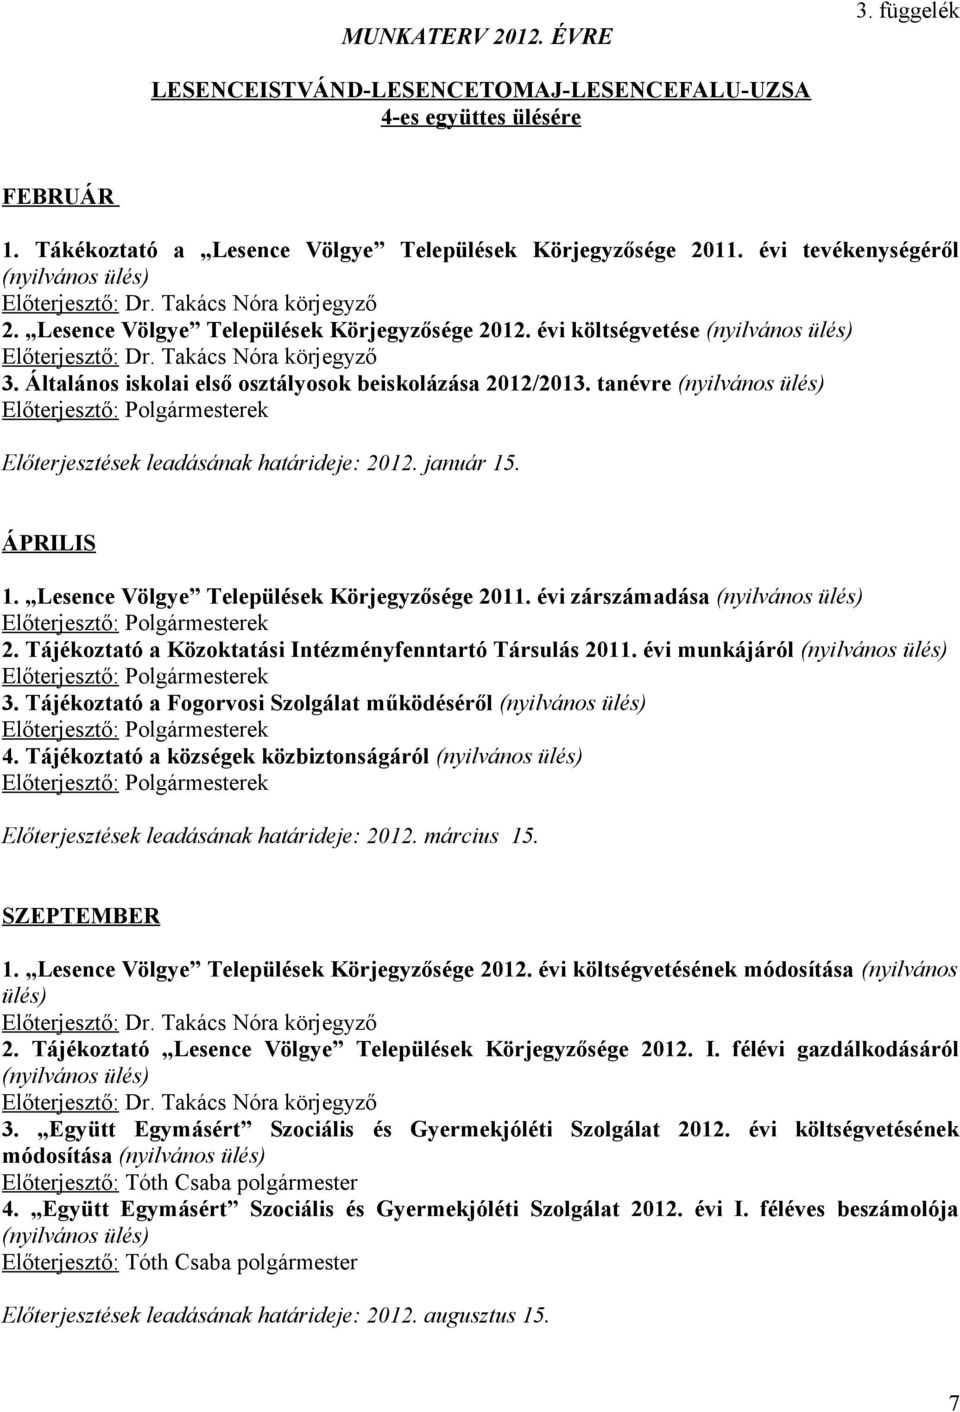 ÁPRILIS 1. Lesence Völgye Települések Körjegyzősége 2011. évi zárszámadása 2. Tájékoztató a Közoktatási Intézményfenntartó Társulás 2011. évi munkájáról 3.